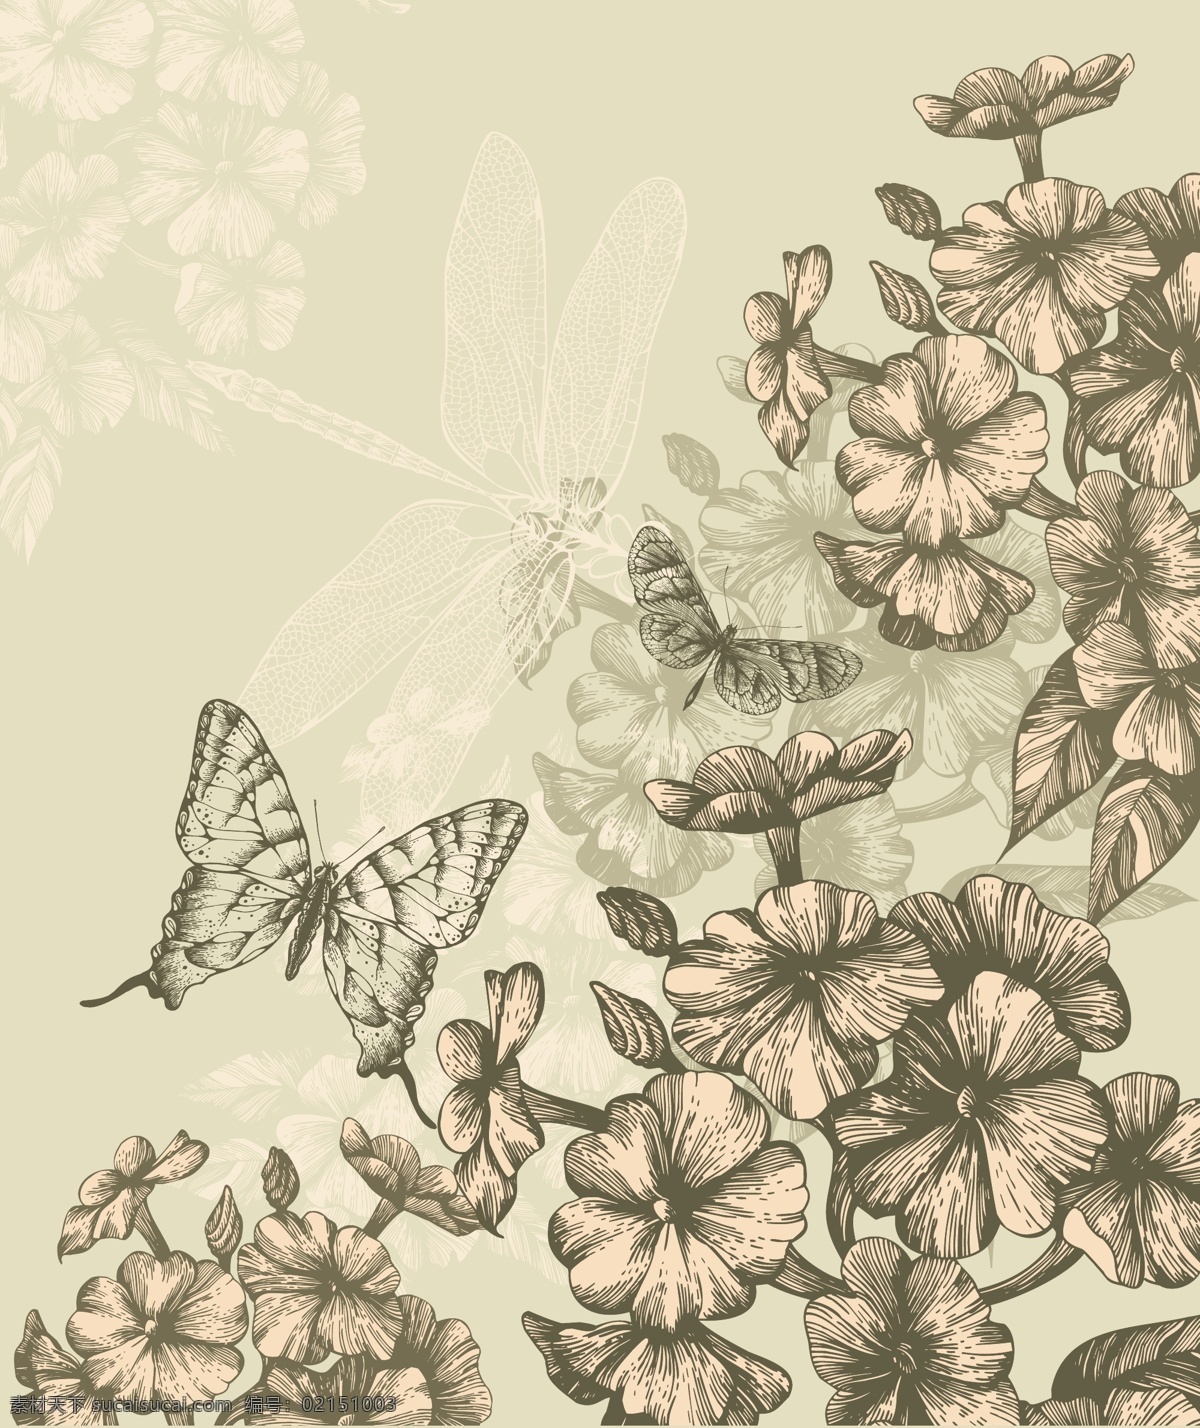 手绘 版画 图案 矢量 背景 底纹 蝴蝶 花朵 模板 蜻蜓 设计稿 素材元素 源文件 矢量图